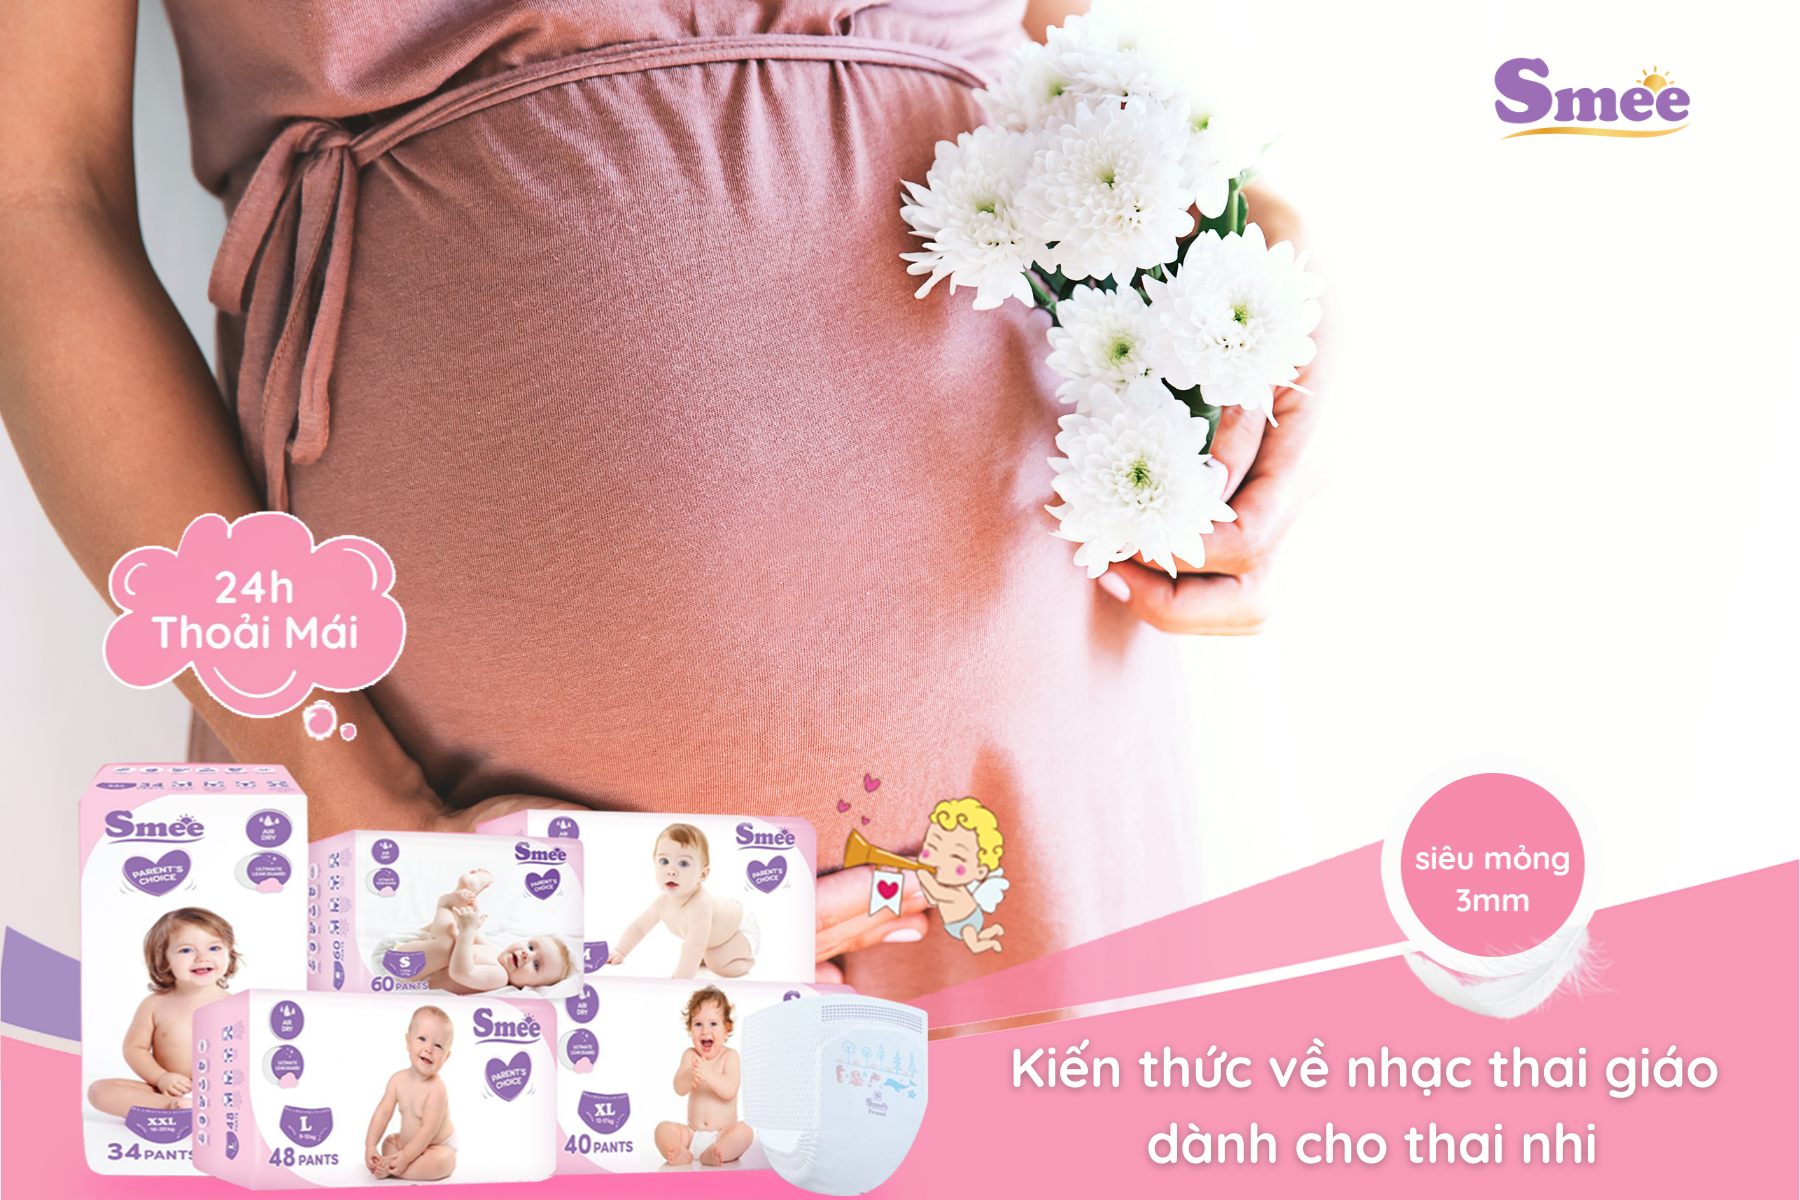 Nên cho thai nhi nghe nhạc thai giáo vào 3 tháng đầu và 3 tháng giữa thai kỳ mẹ nhé!